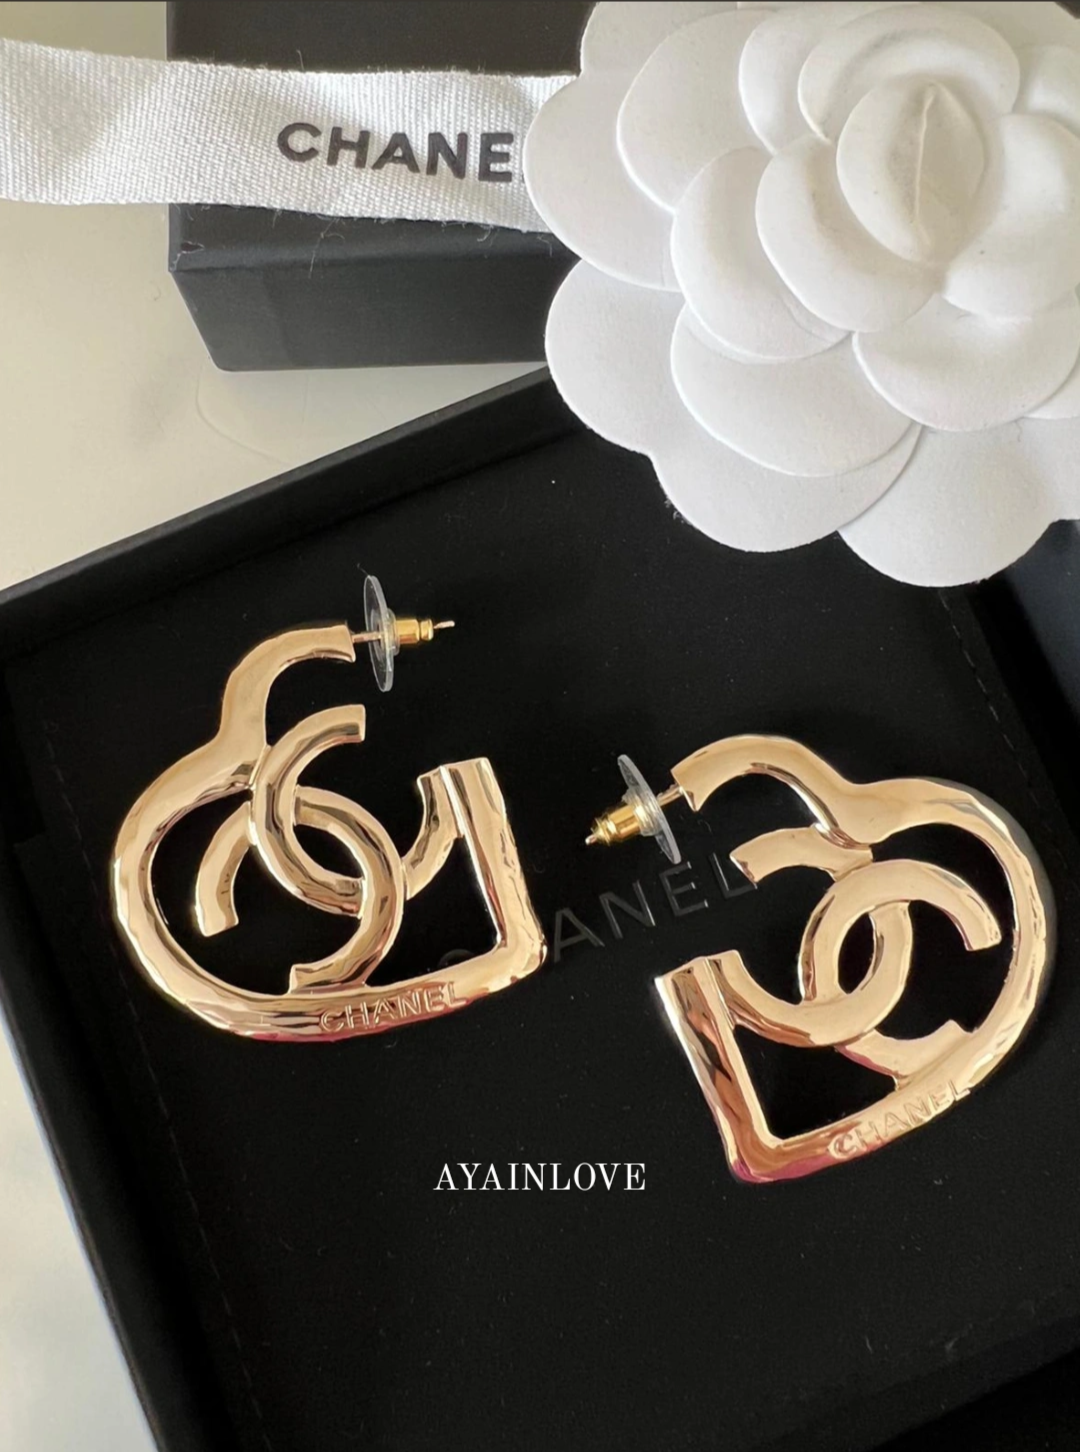 Chanel heart earrings, Women's Fashion, Jewelry & Organisers